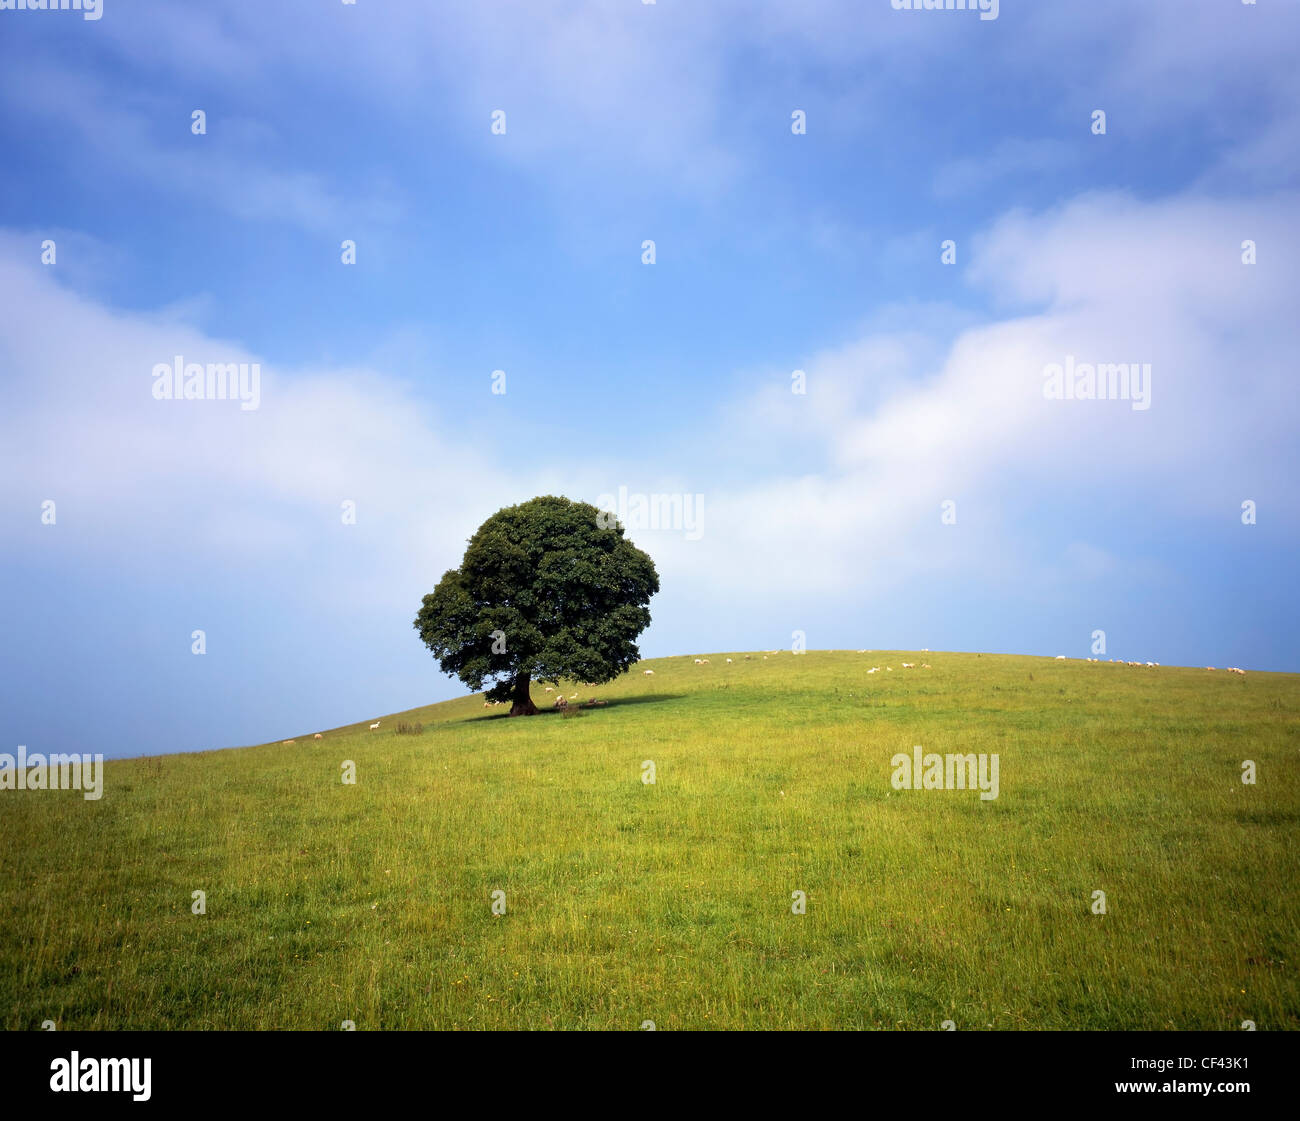 Schafbeweidung auf einem Hügel mit einem einsamen Baum. Stockfoto